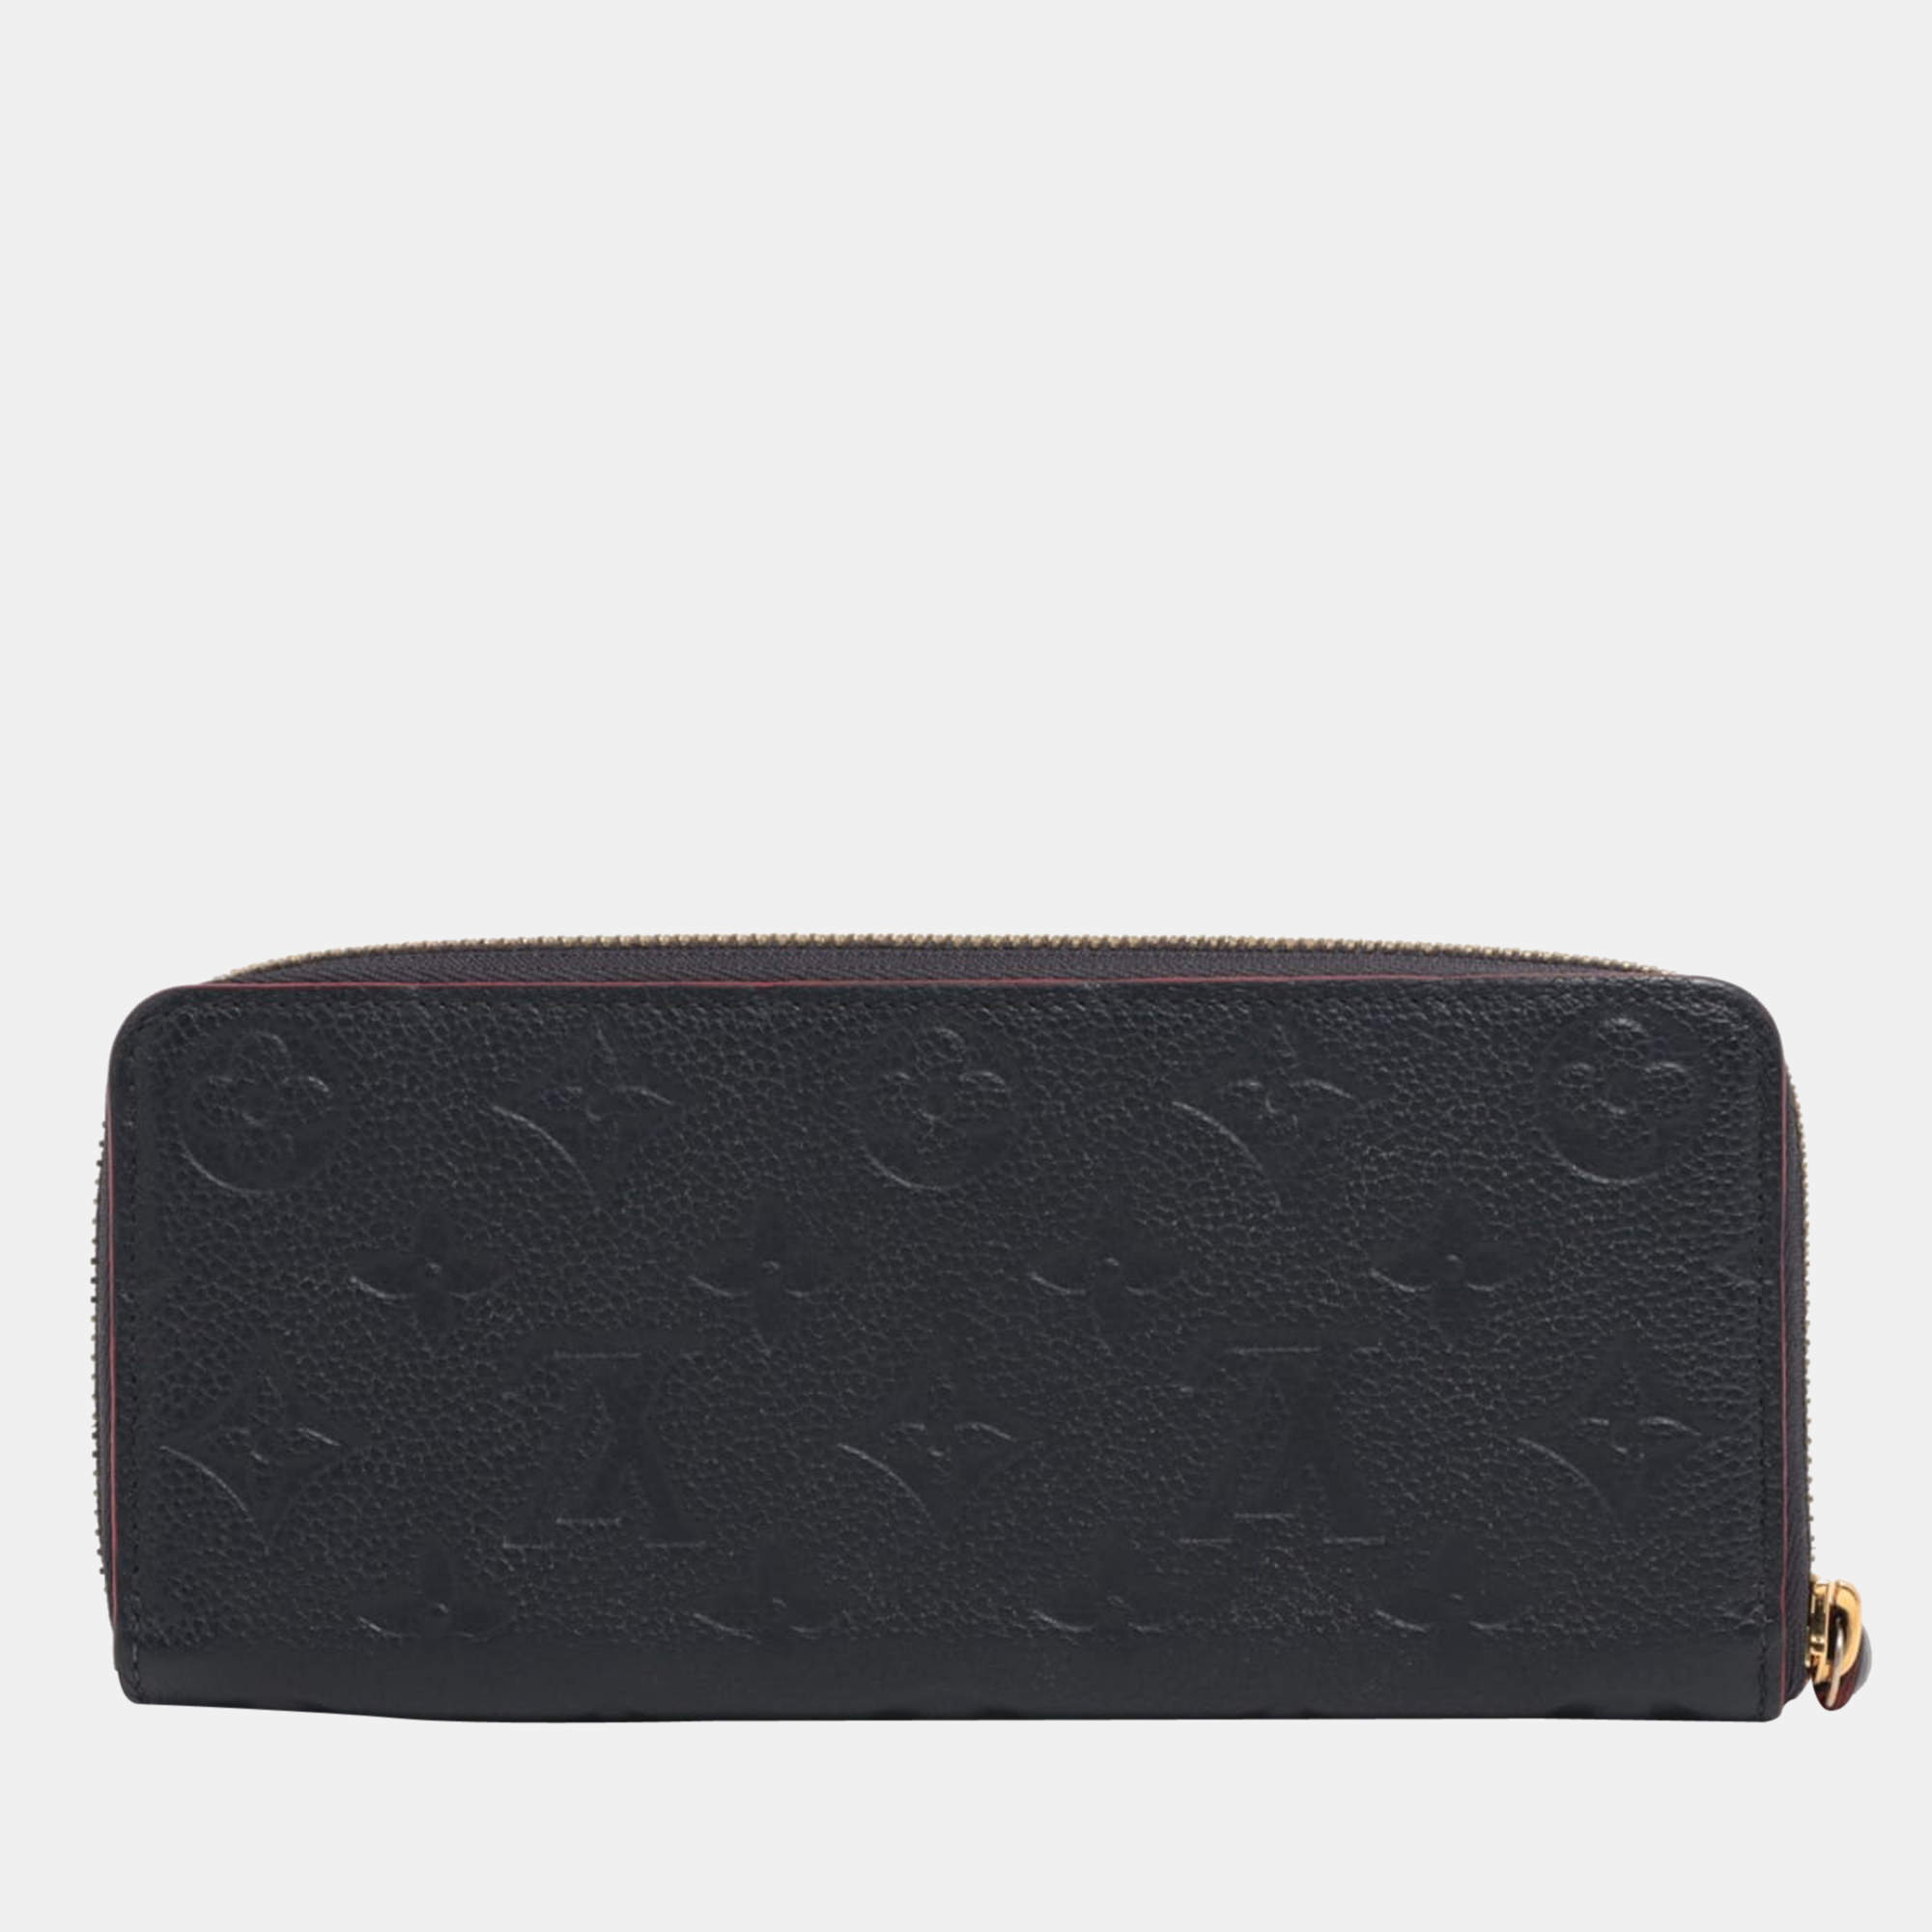 Louis Vuitton Wallet Clemence Epi Noir Black